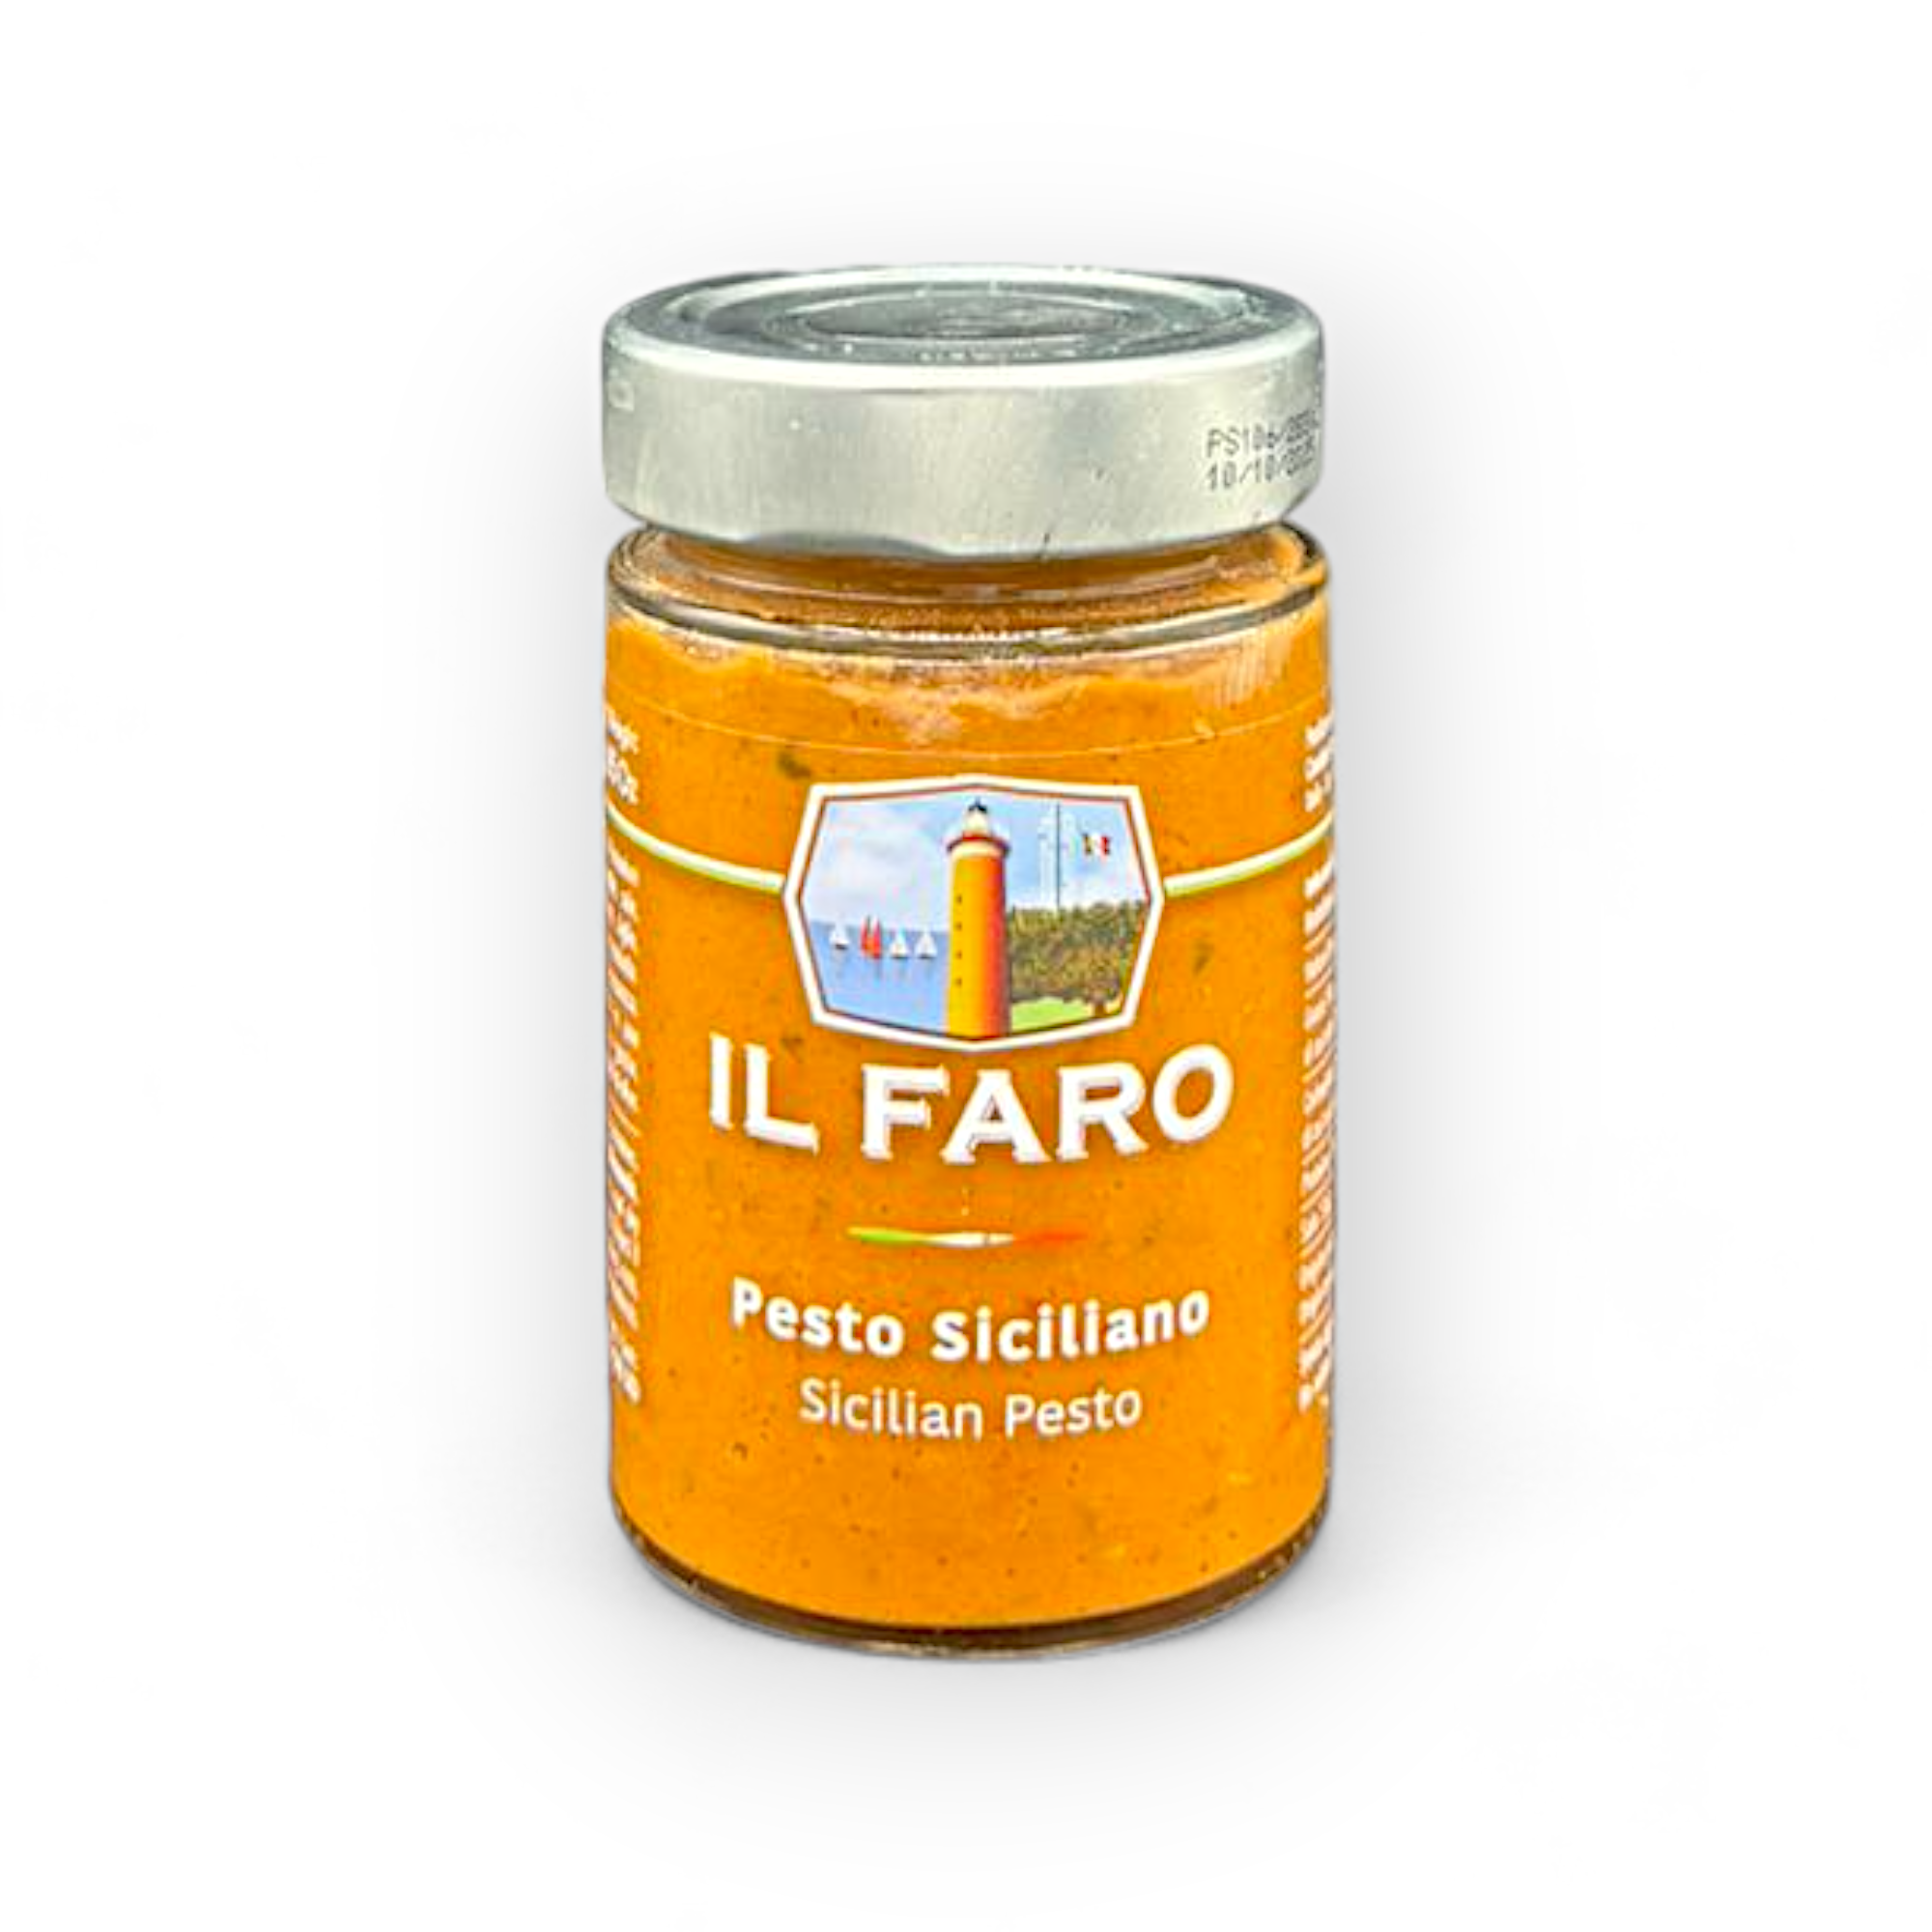 Pesto Siciliano